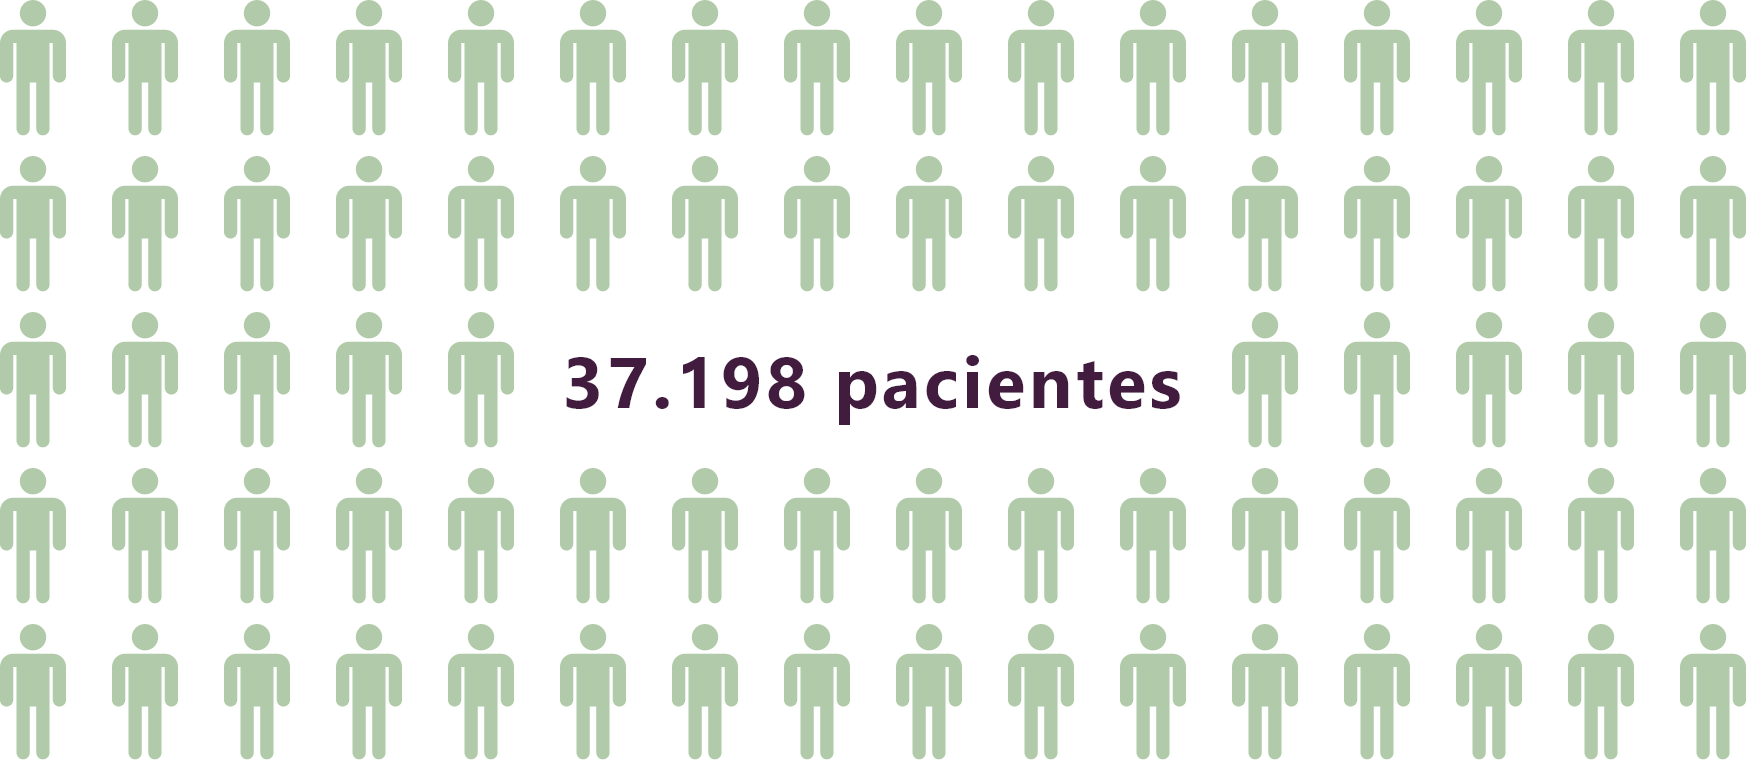 37,198 patients